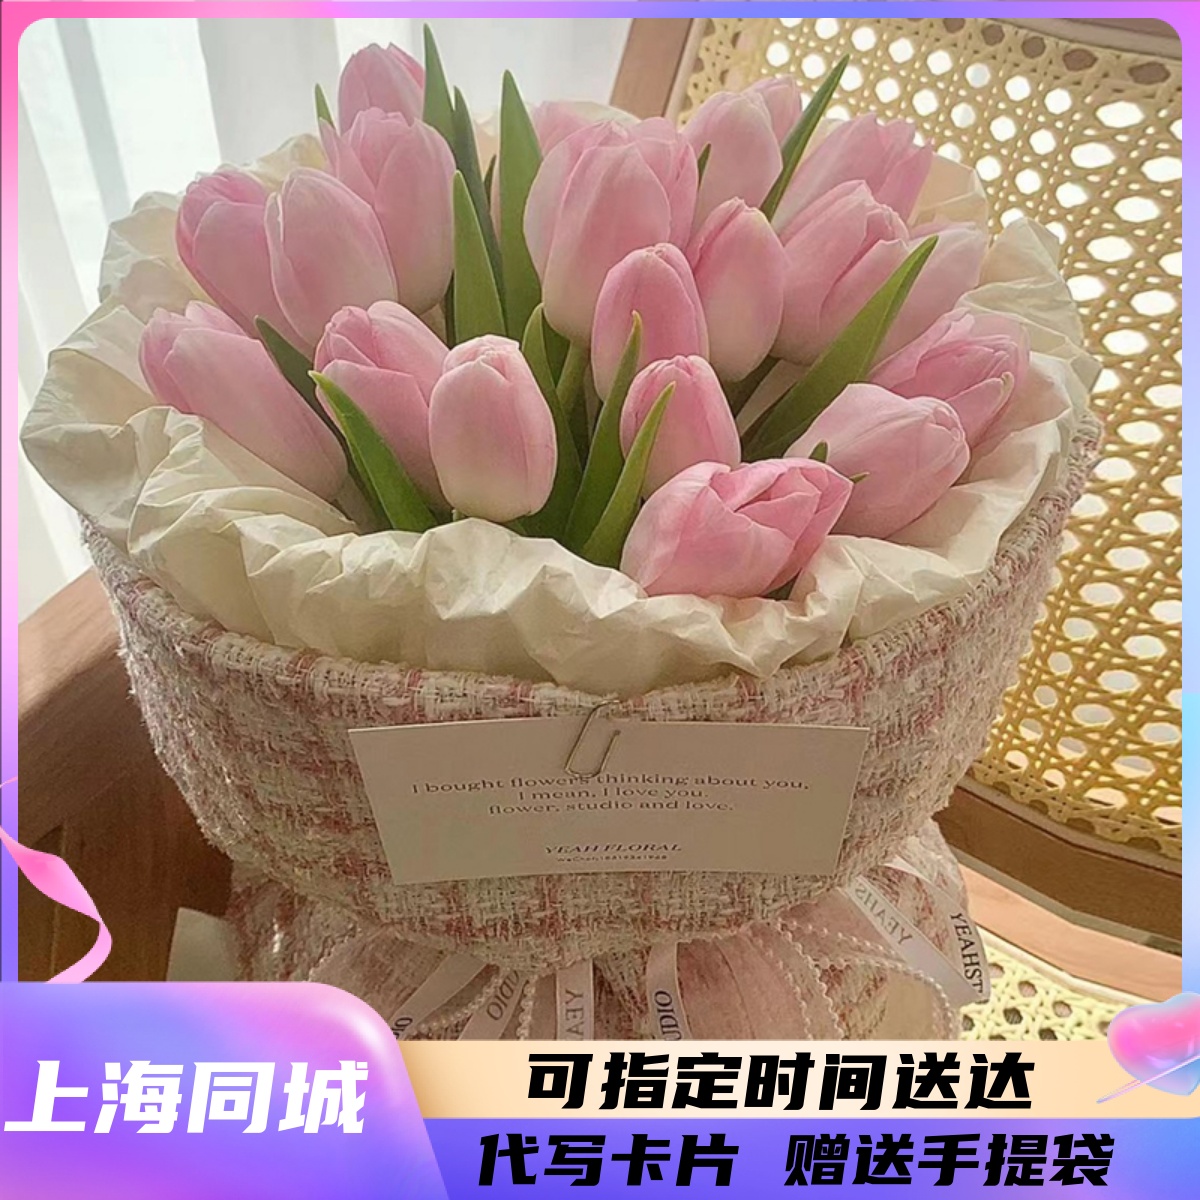 上海同城鲜花速递进口布朗尼吸色郁金香花束妈妈女友闺蜜生日礼物